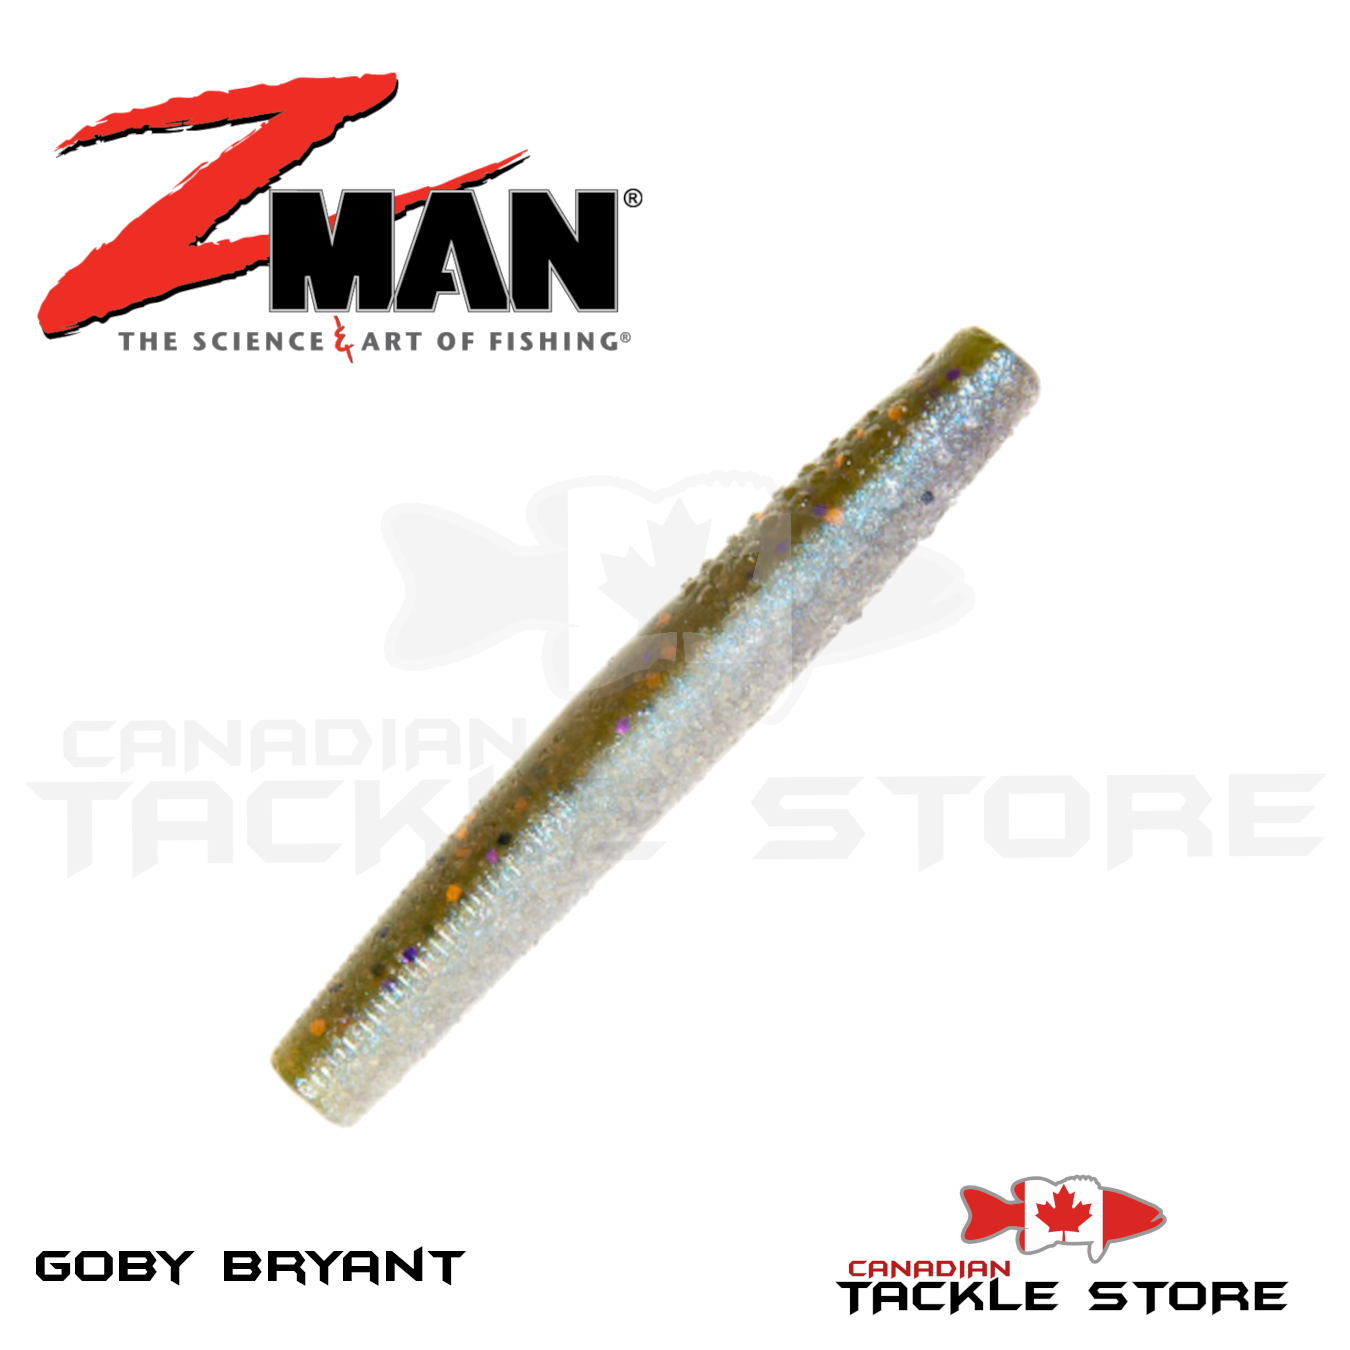 Z-Man Finesse TRD Canada Craw